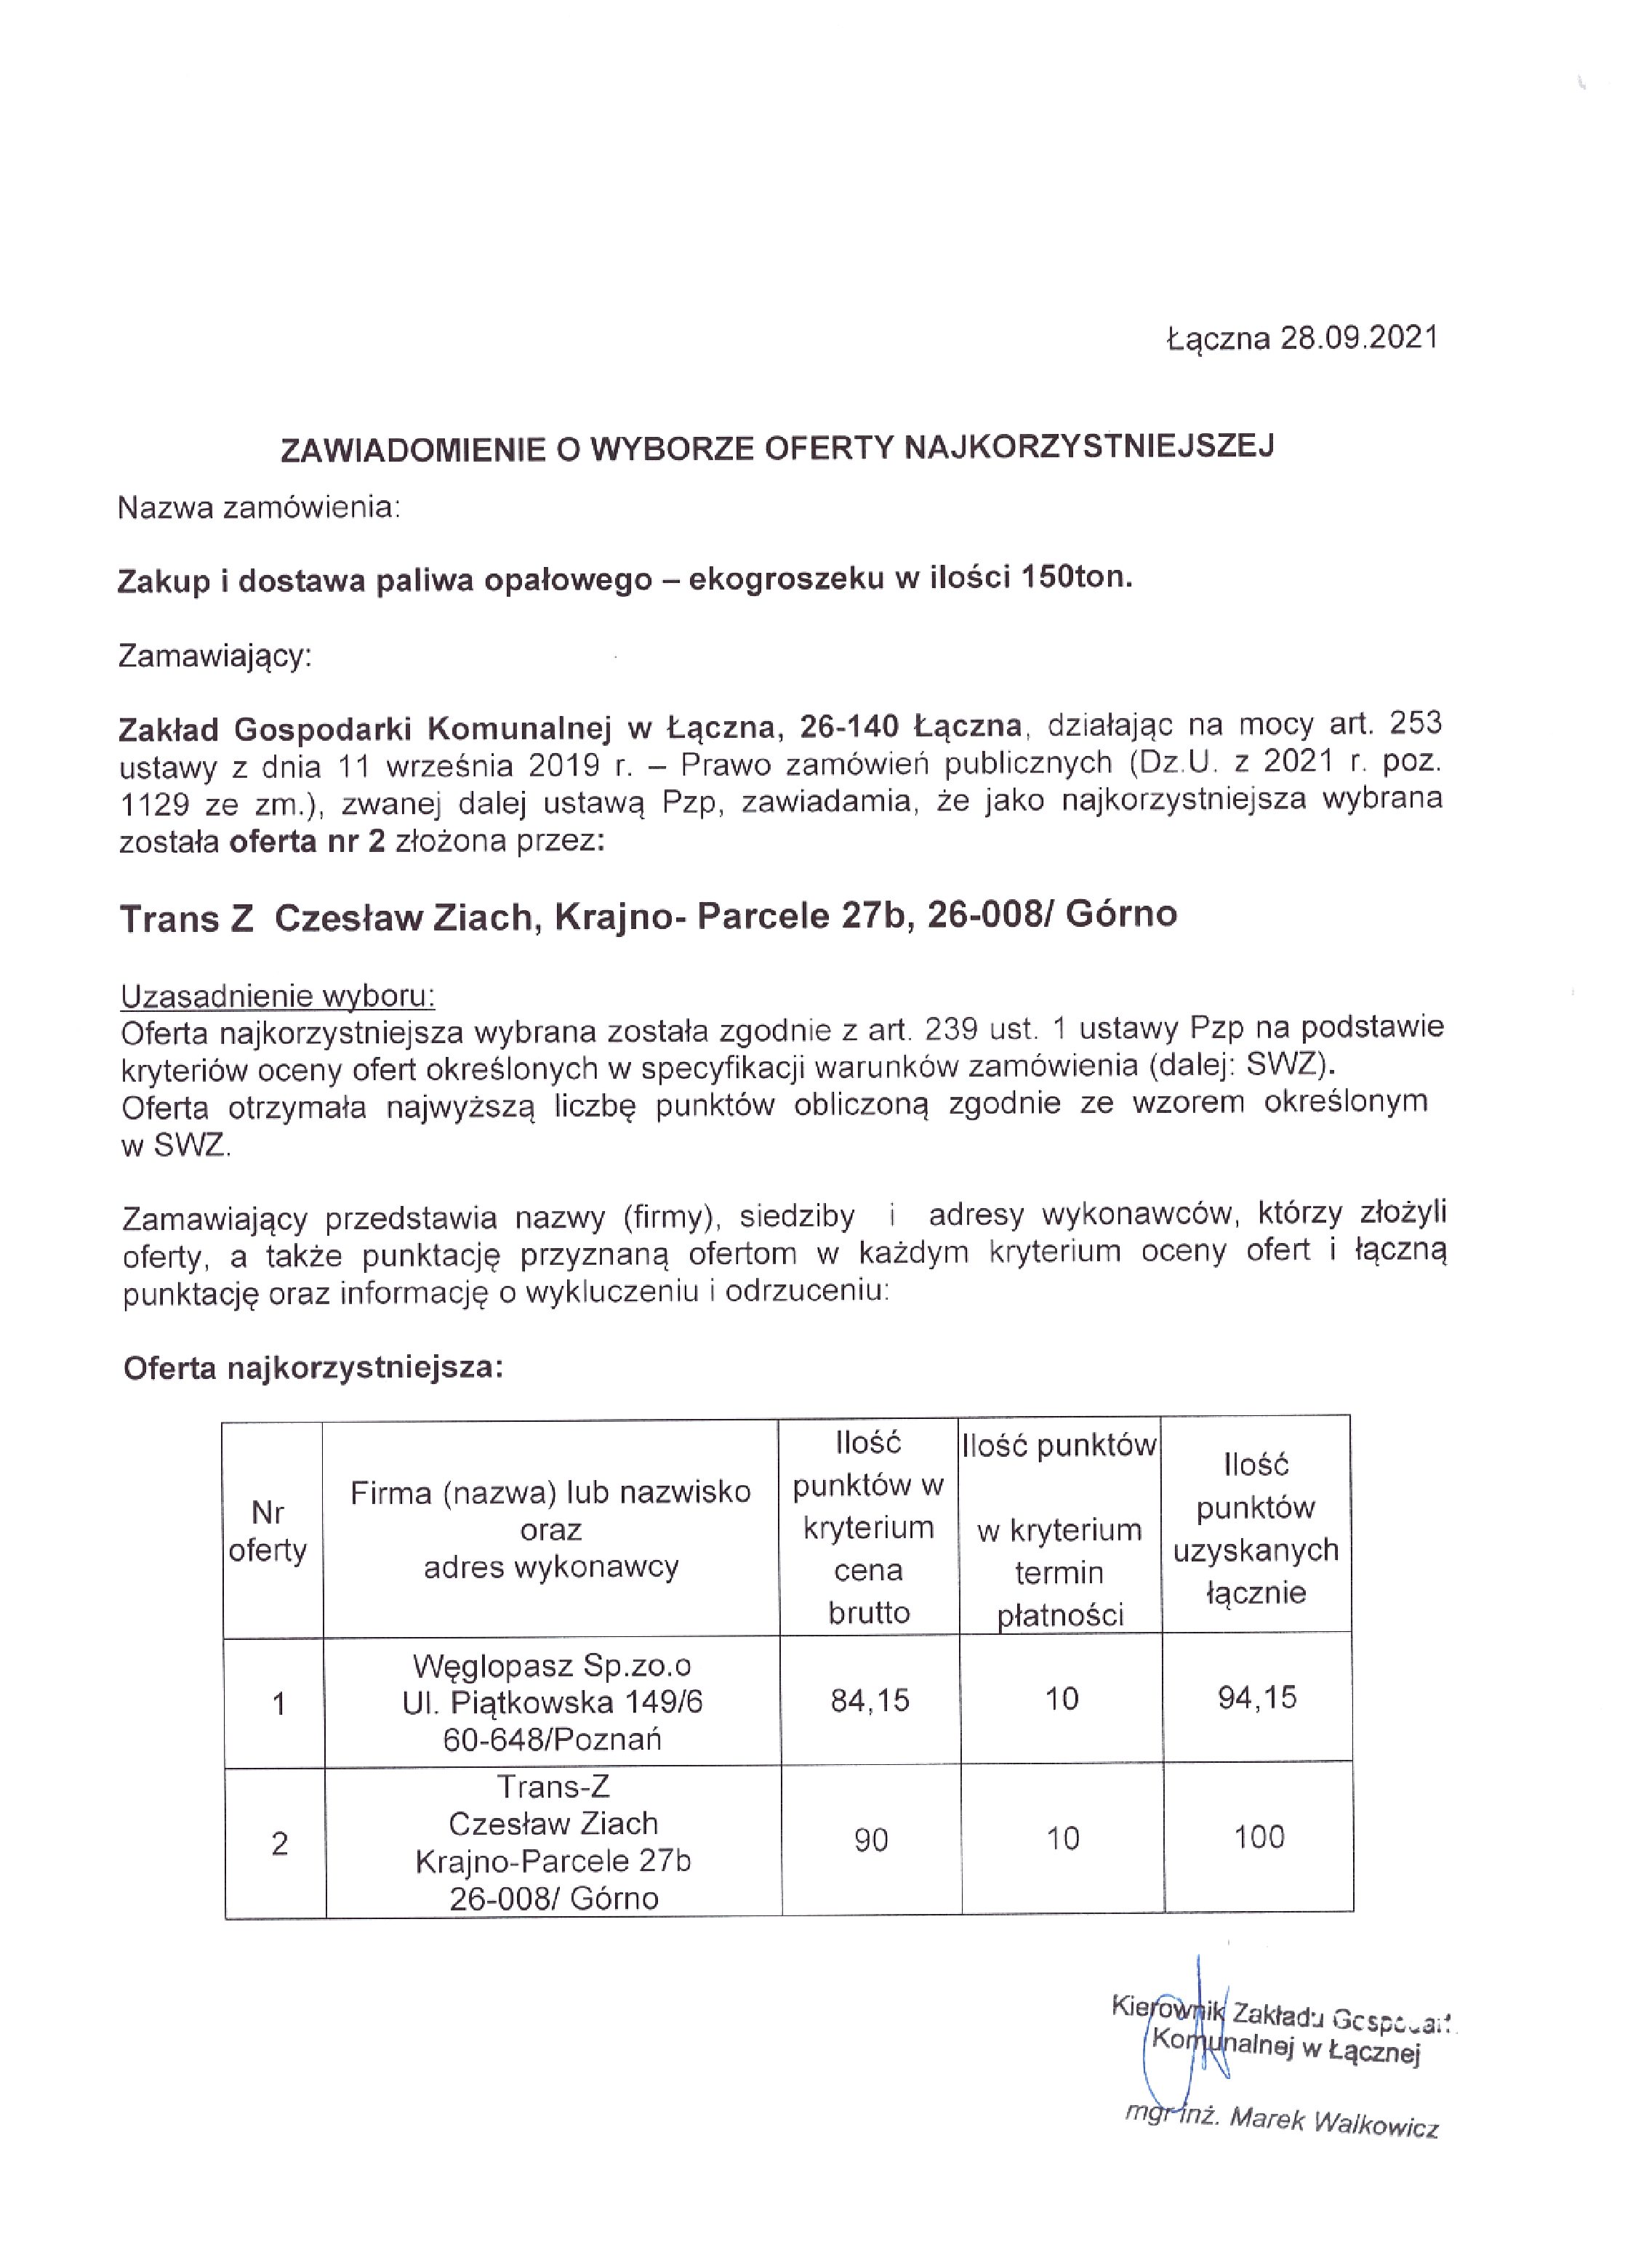 Dostawa Paliwa Opałowego – Ekogroszku w ilości 150 ton dla Zakładu Gospodarki Komunalnej w Łącznej